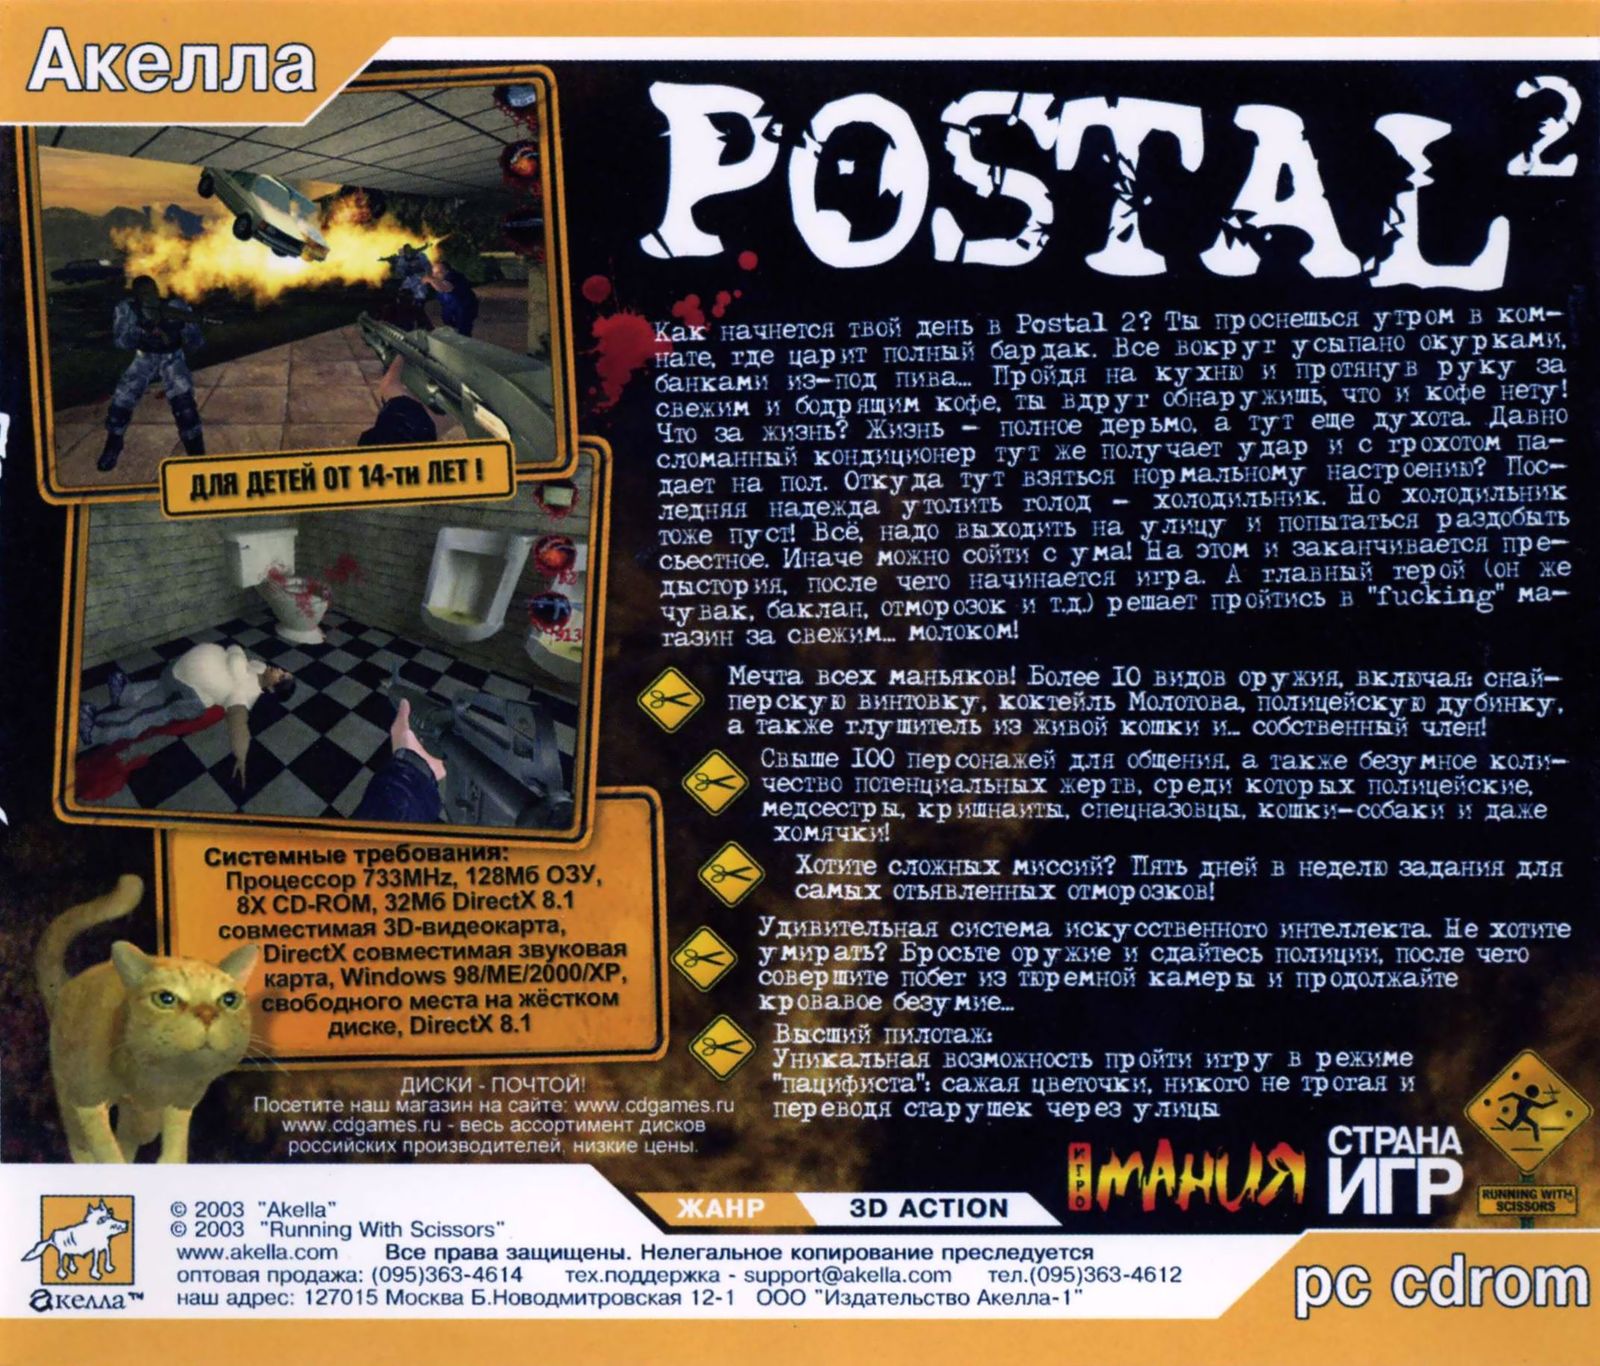 Postal 2 awp delete review что это фото 72